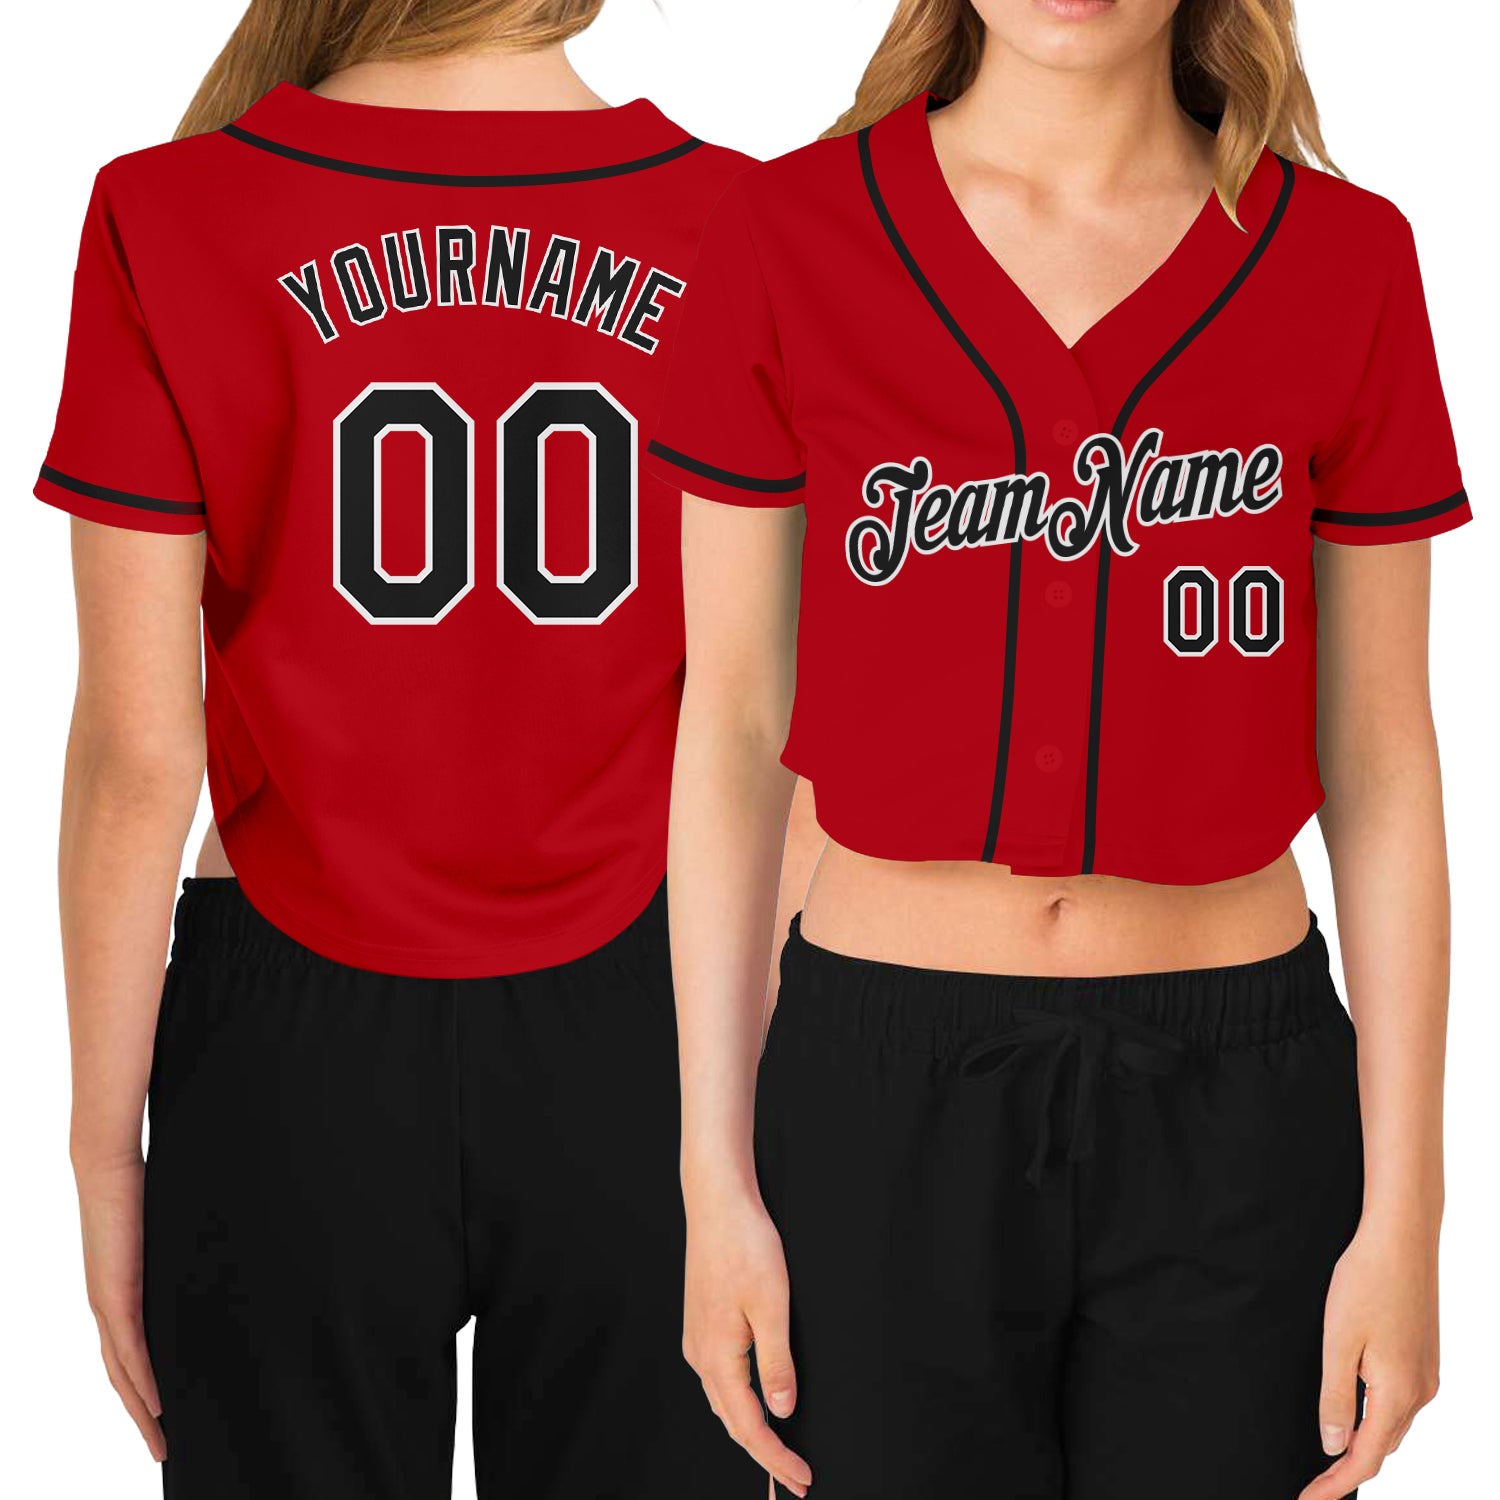 Cheap Custom Women's White Red-Black V-Neck Cropped Baseball